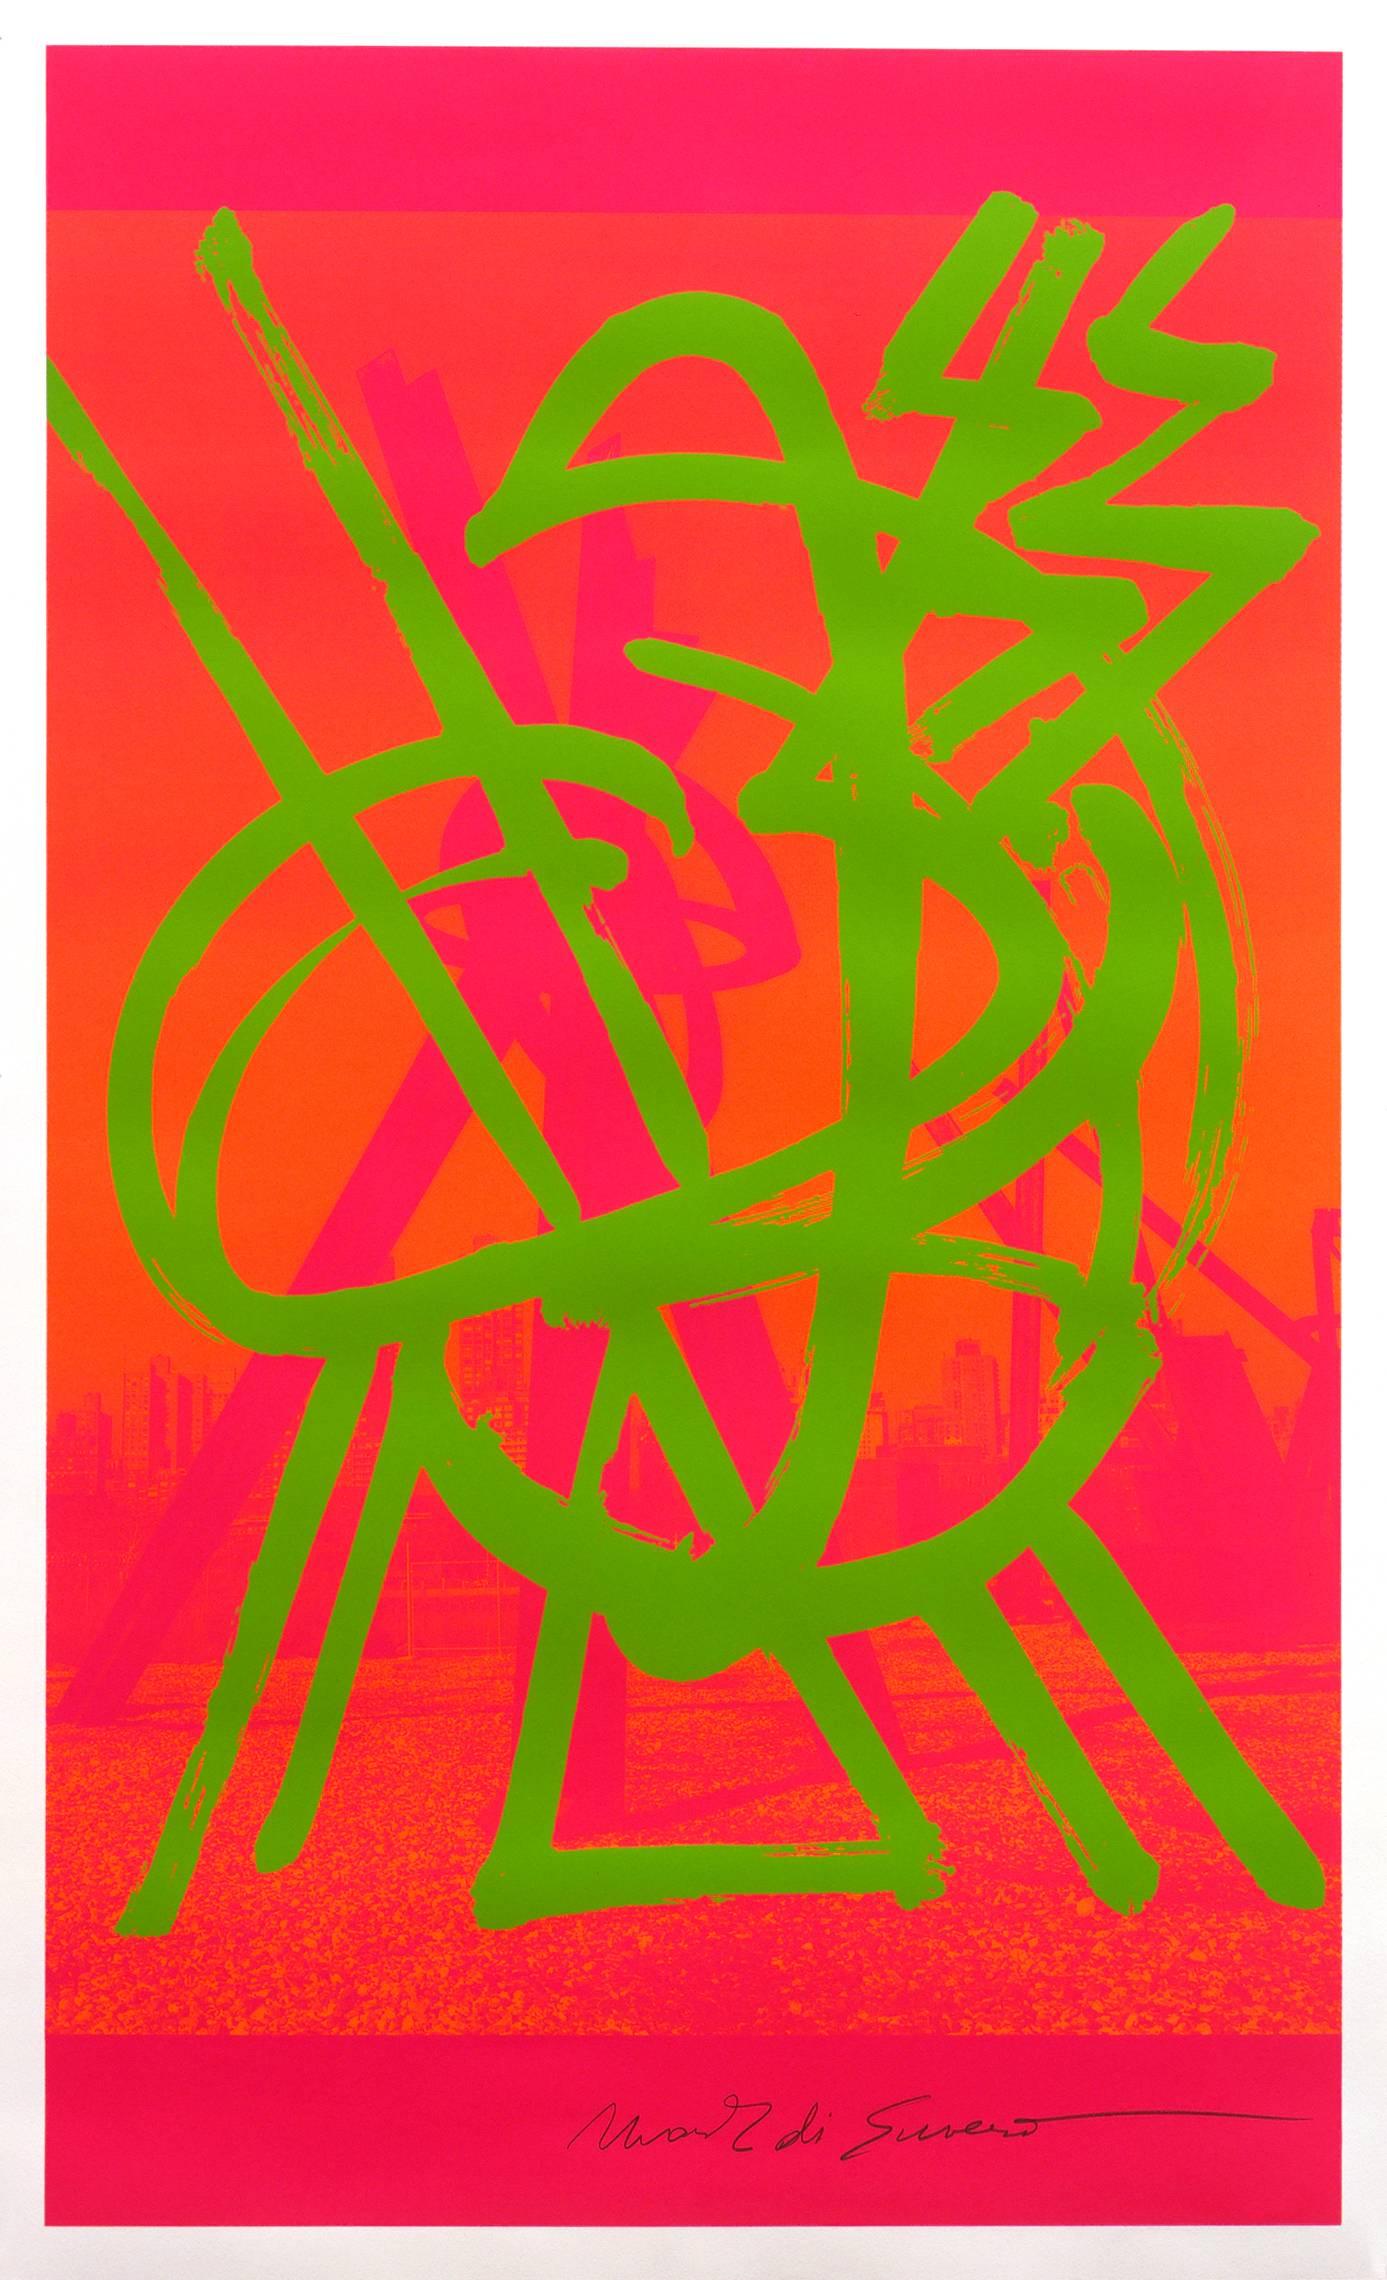 Dieser Siebdruck von Mark di Suvero leuchtet in leuchtenden Farben. Leuchtend grüne Linien auf einem pink-orangefarbenen Hintergrund sorgen für ein lustiges Kunstwerk in jedem Raum. Dieser Druck ist vom Künstler signiert und nummeriert. Der Druck